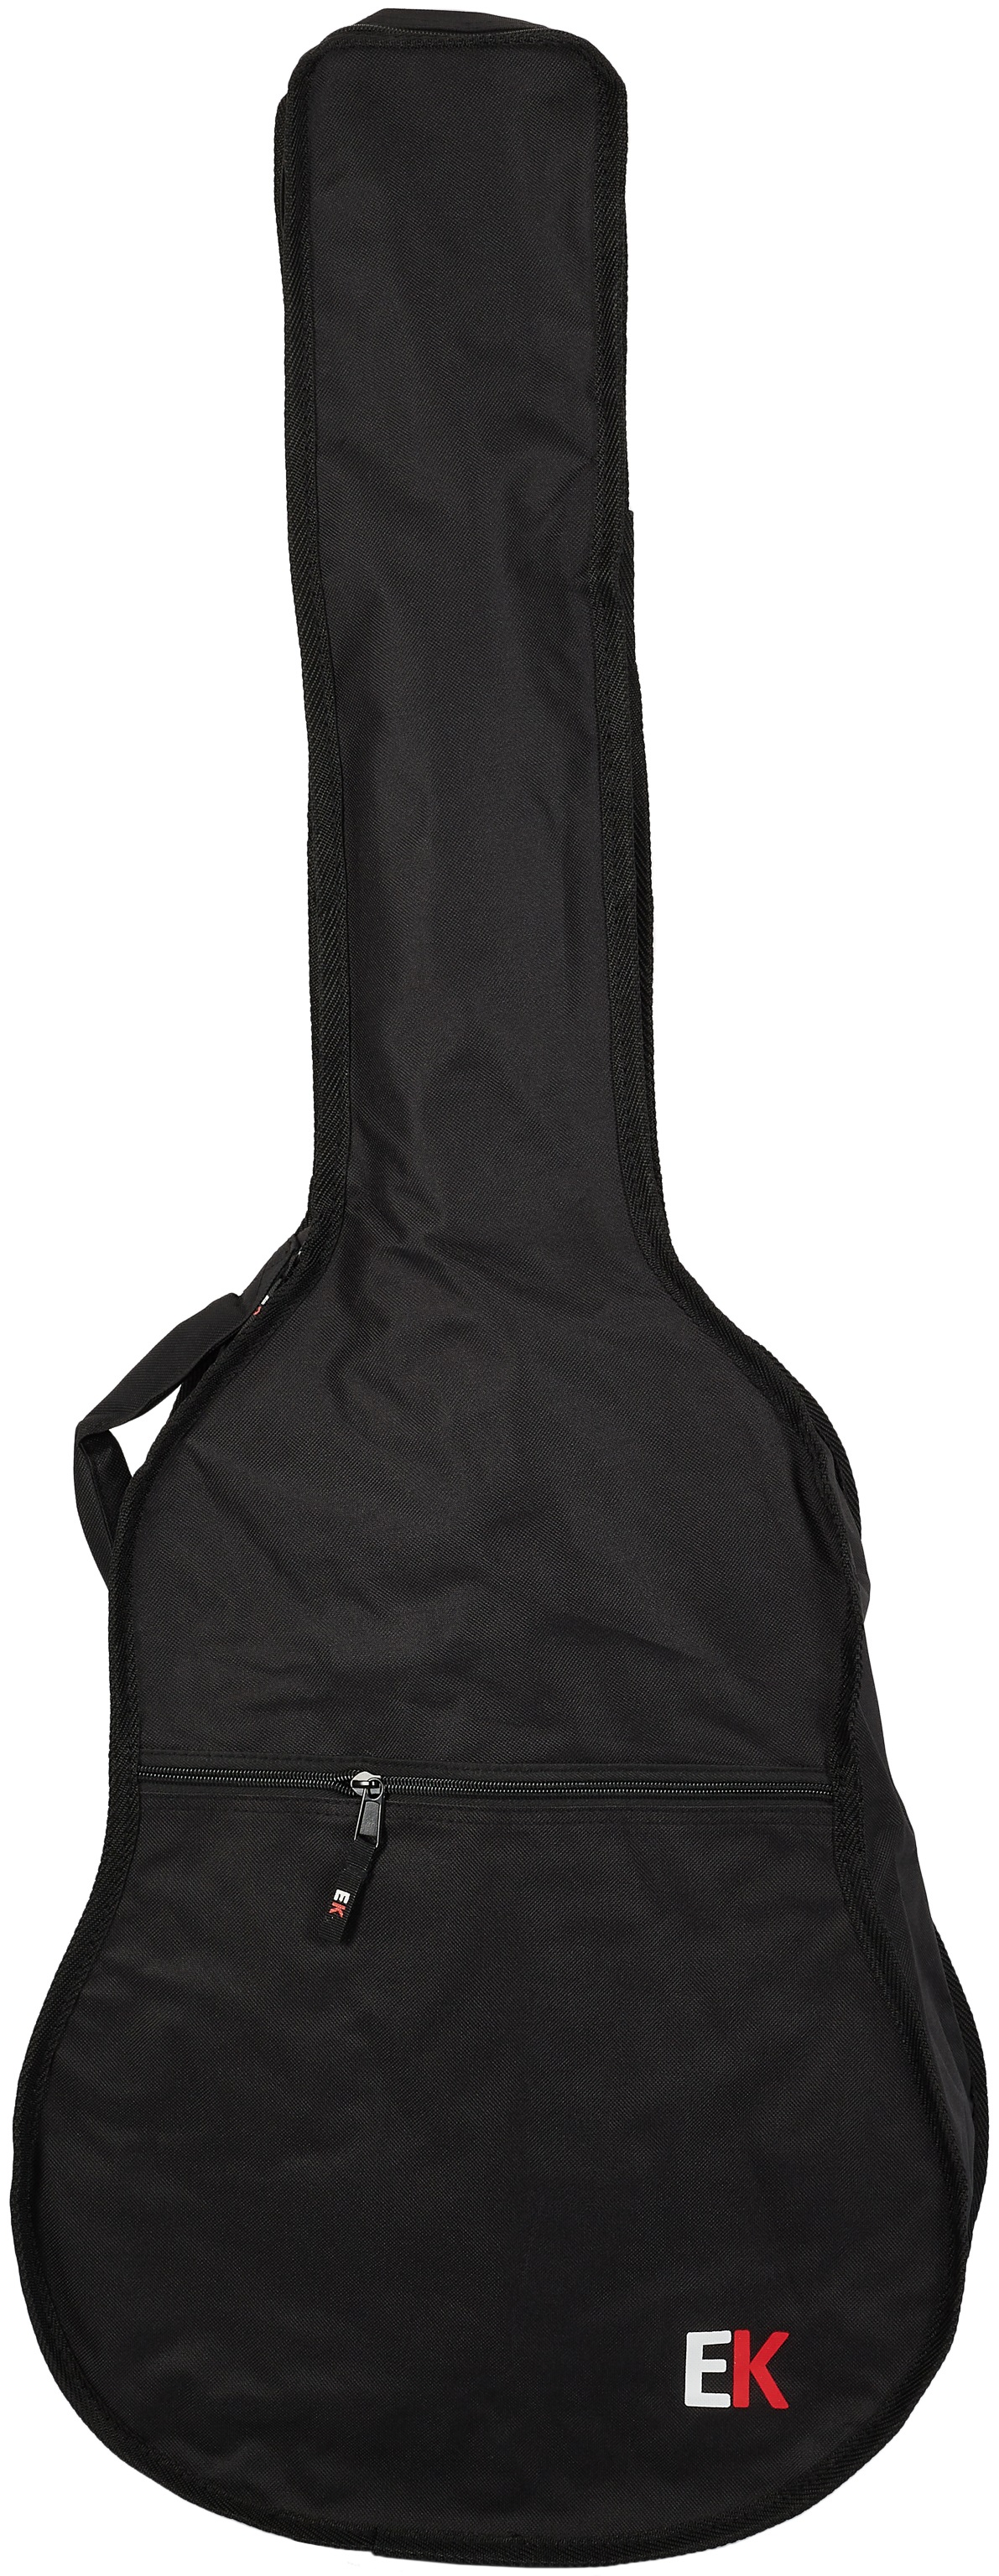 EK Classical Guitar Bag 4/4